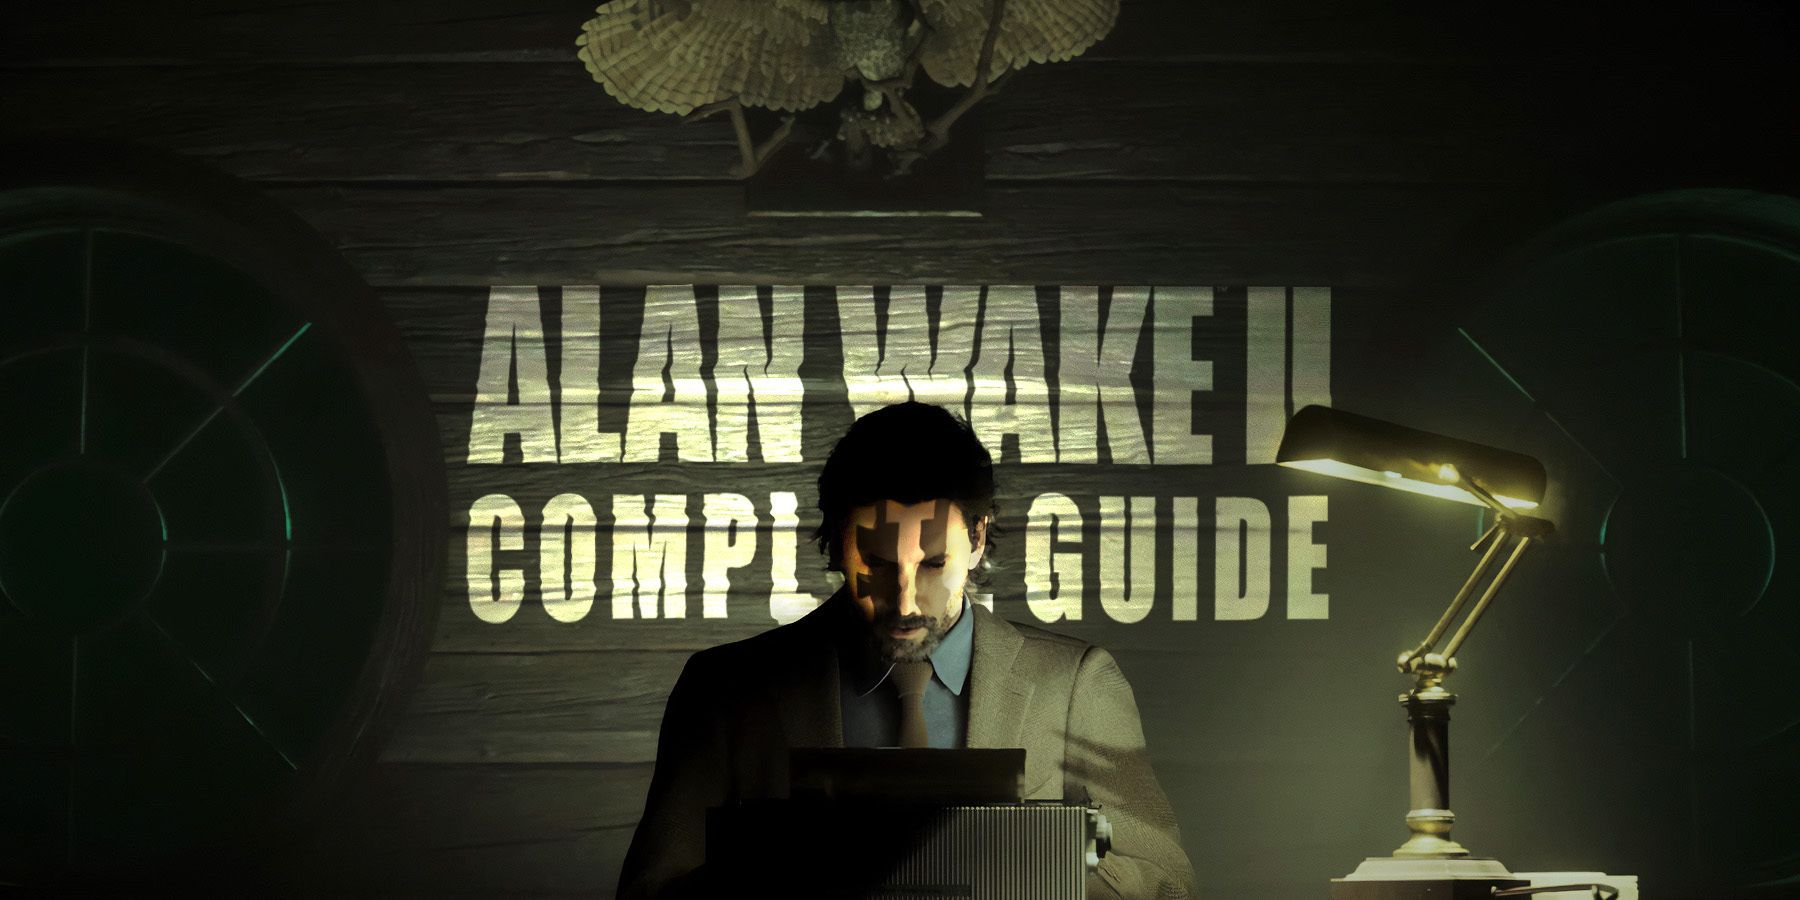 Alan Wake 2: Update 13 The Final Draft notes — Alan Wake